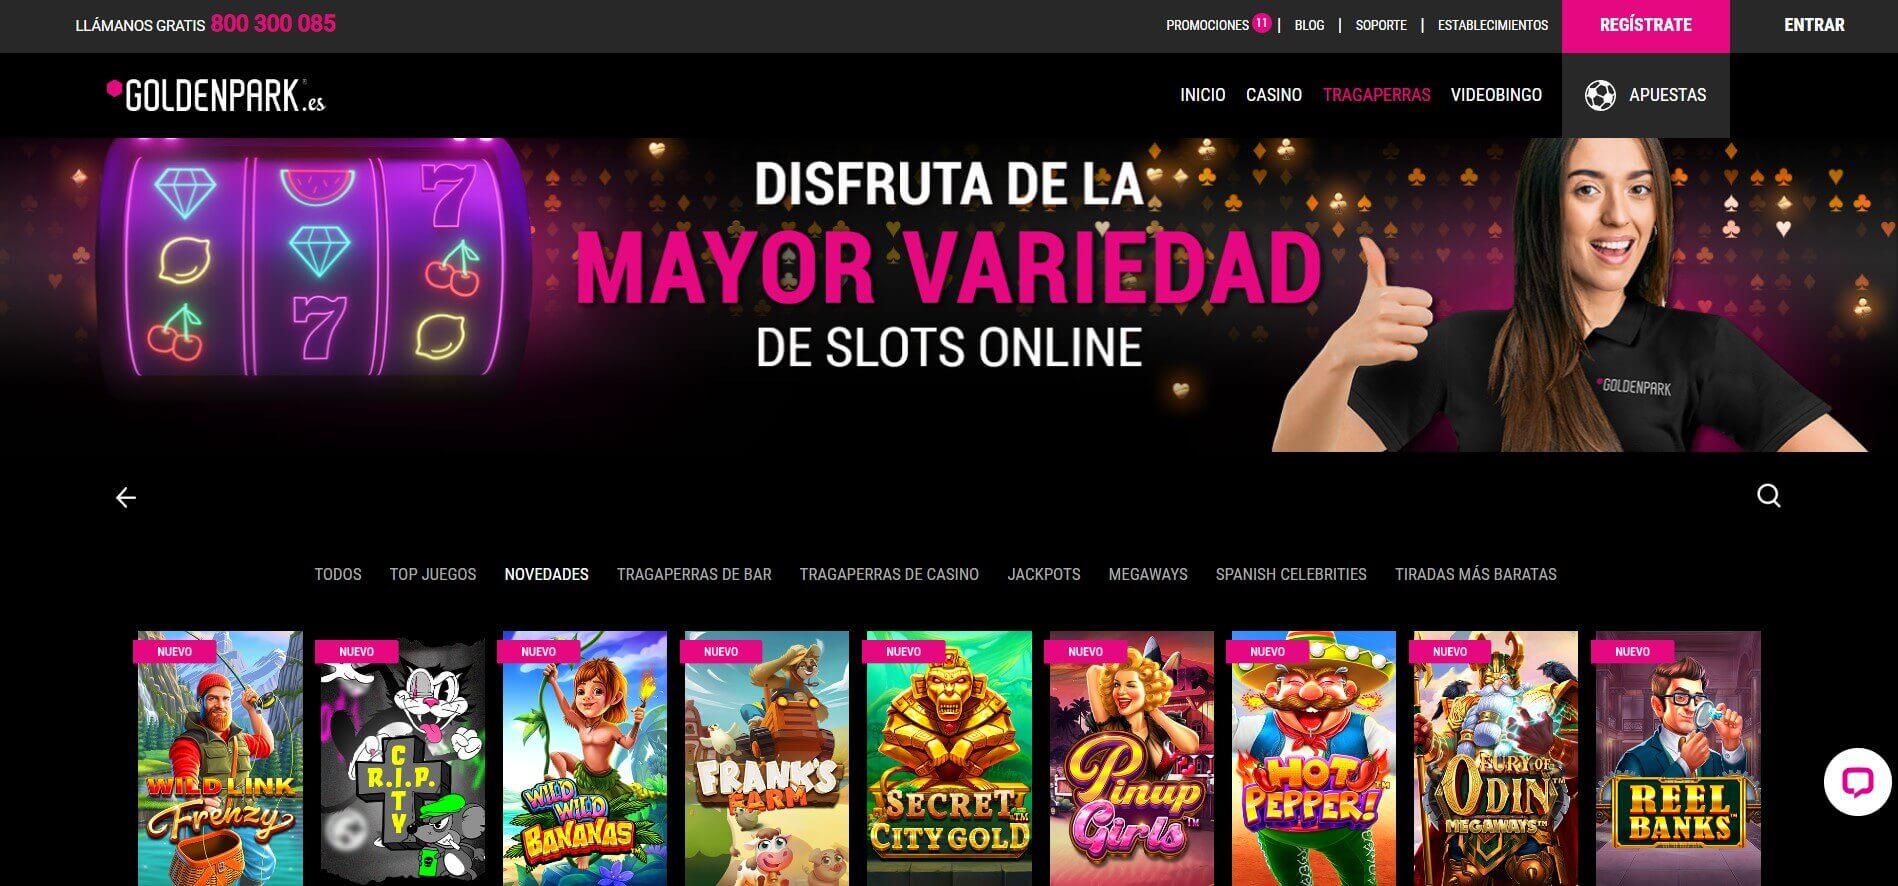 goldenpark casino online espana